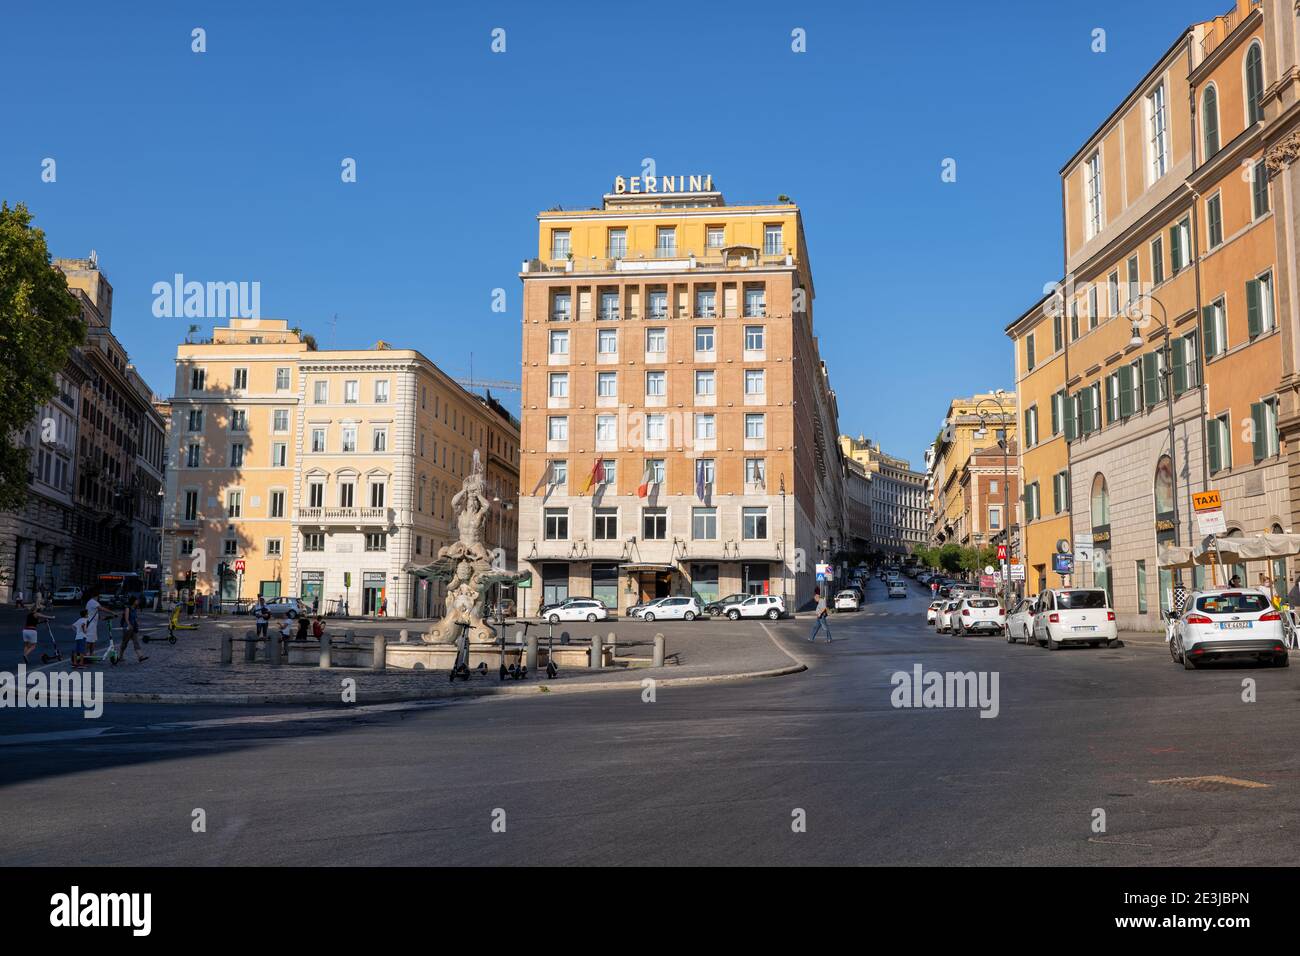 Piazza Barberini in Rome, Italy, square in the city center with Triton Fountain and  Hotel Bernini Bristol Stock Photo